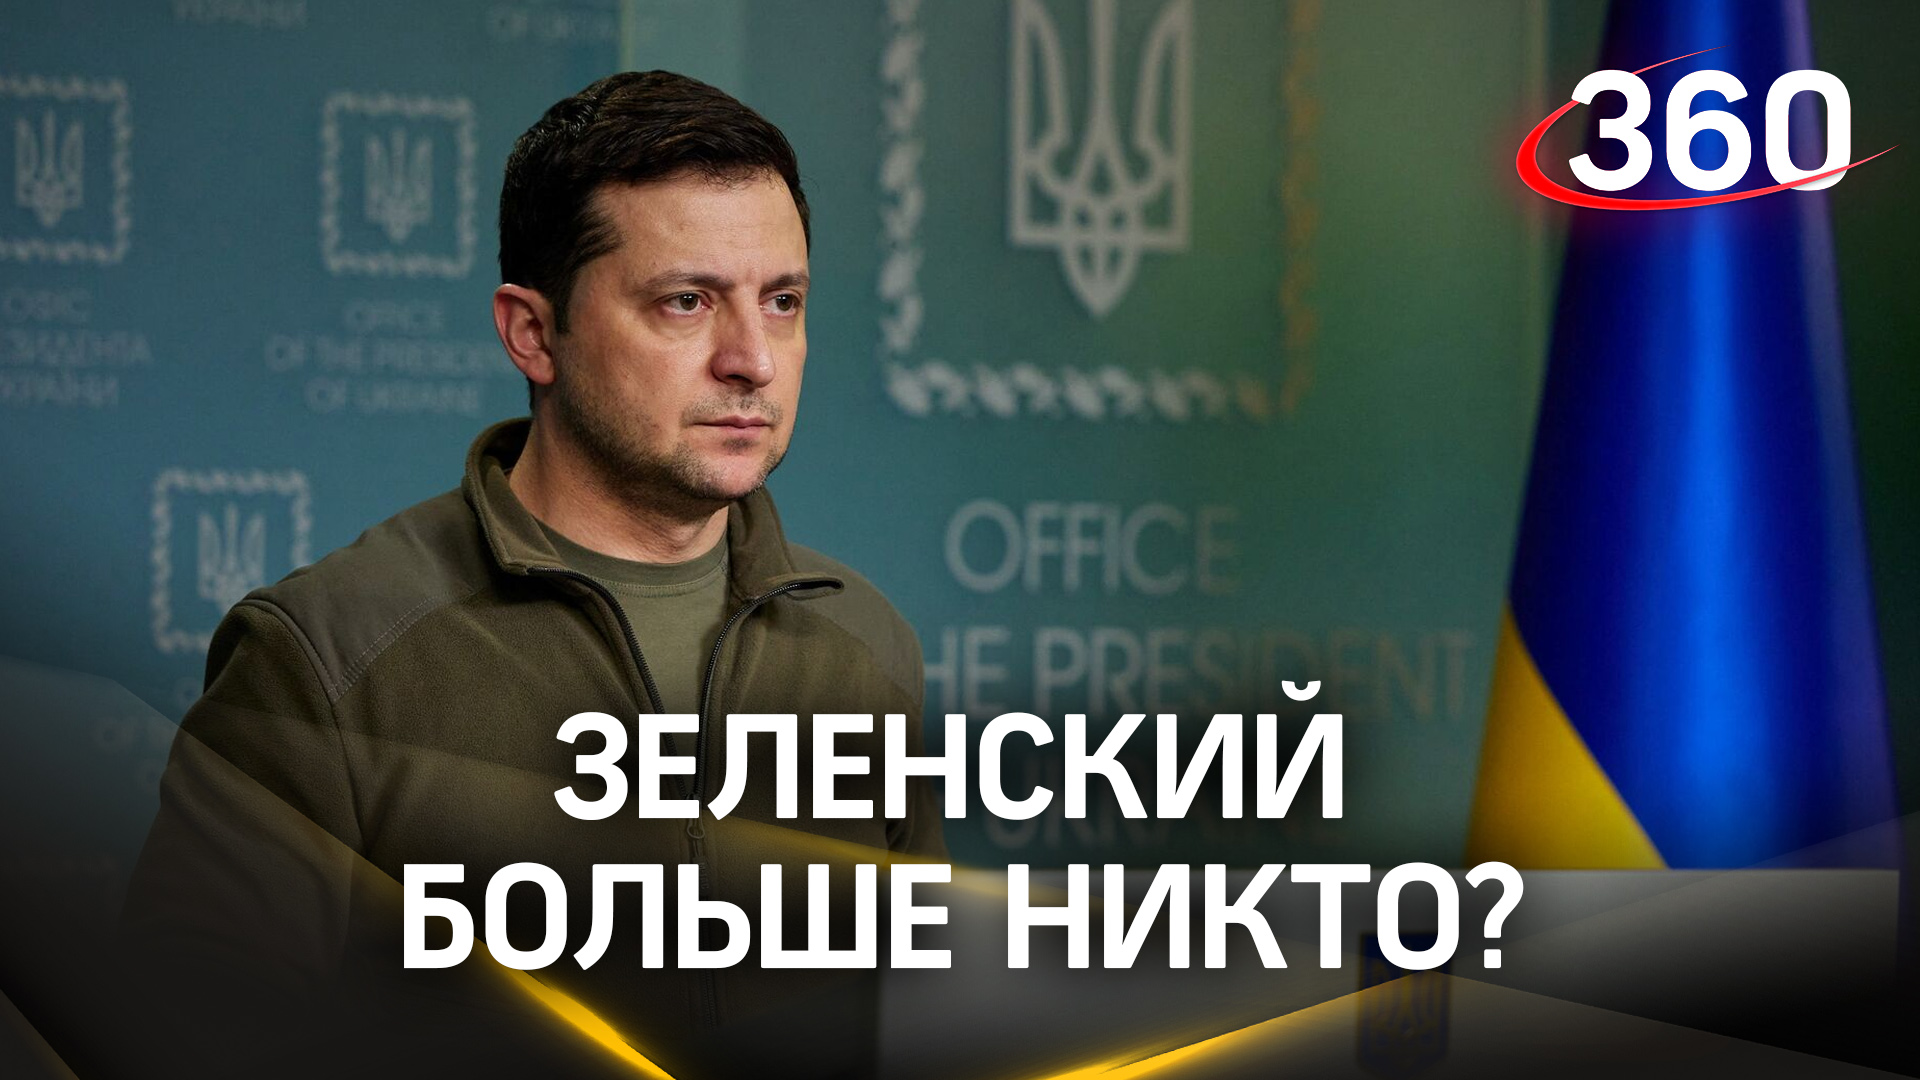 Зеленский больше никто? Запад боится, что полномочия президента Украины истекли